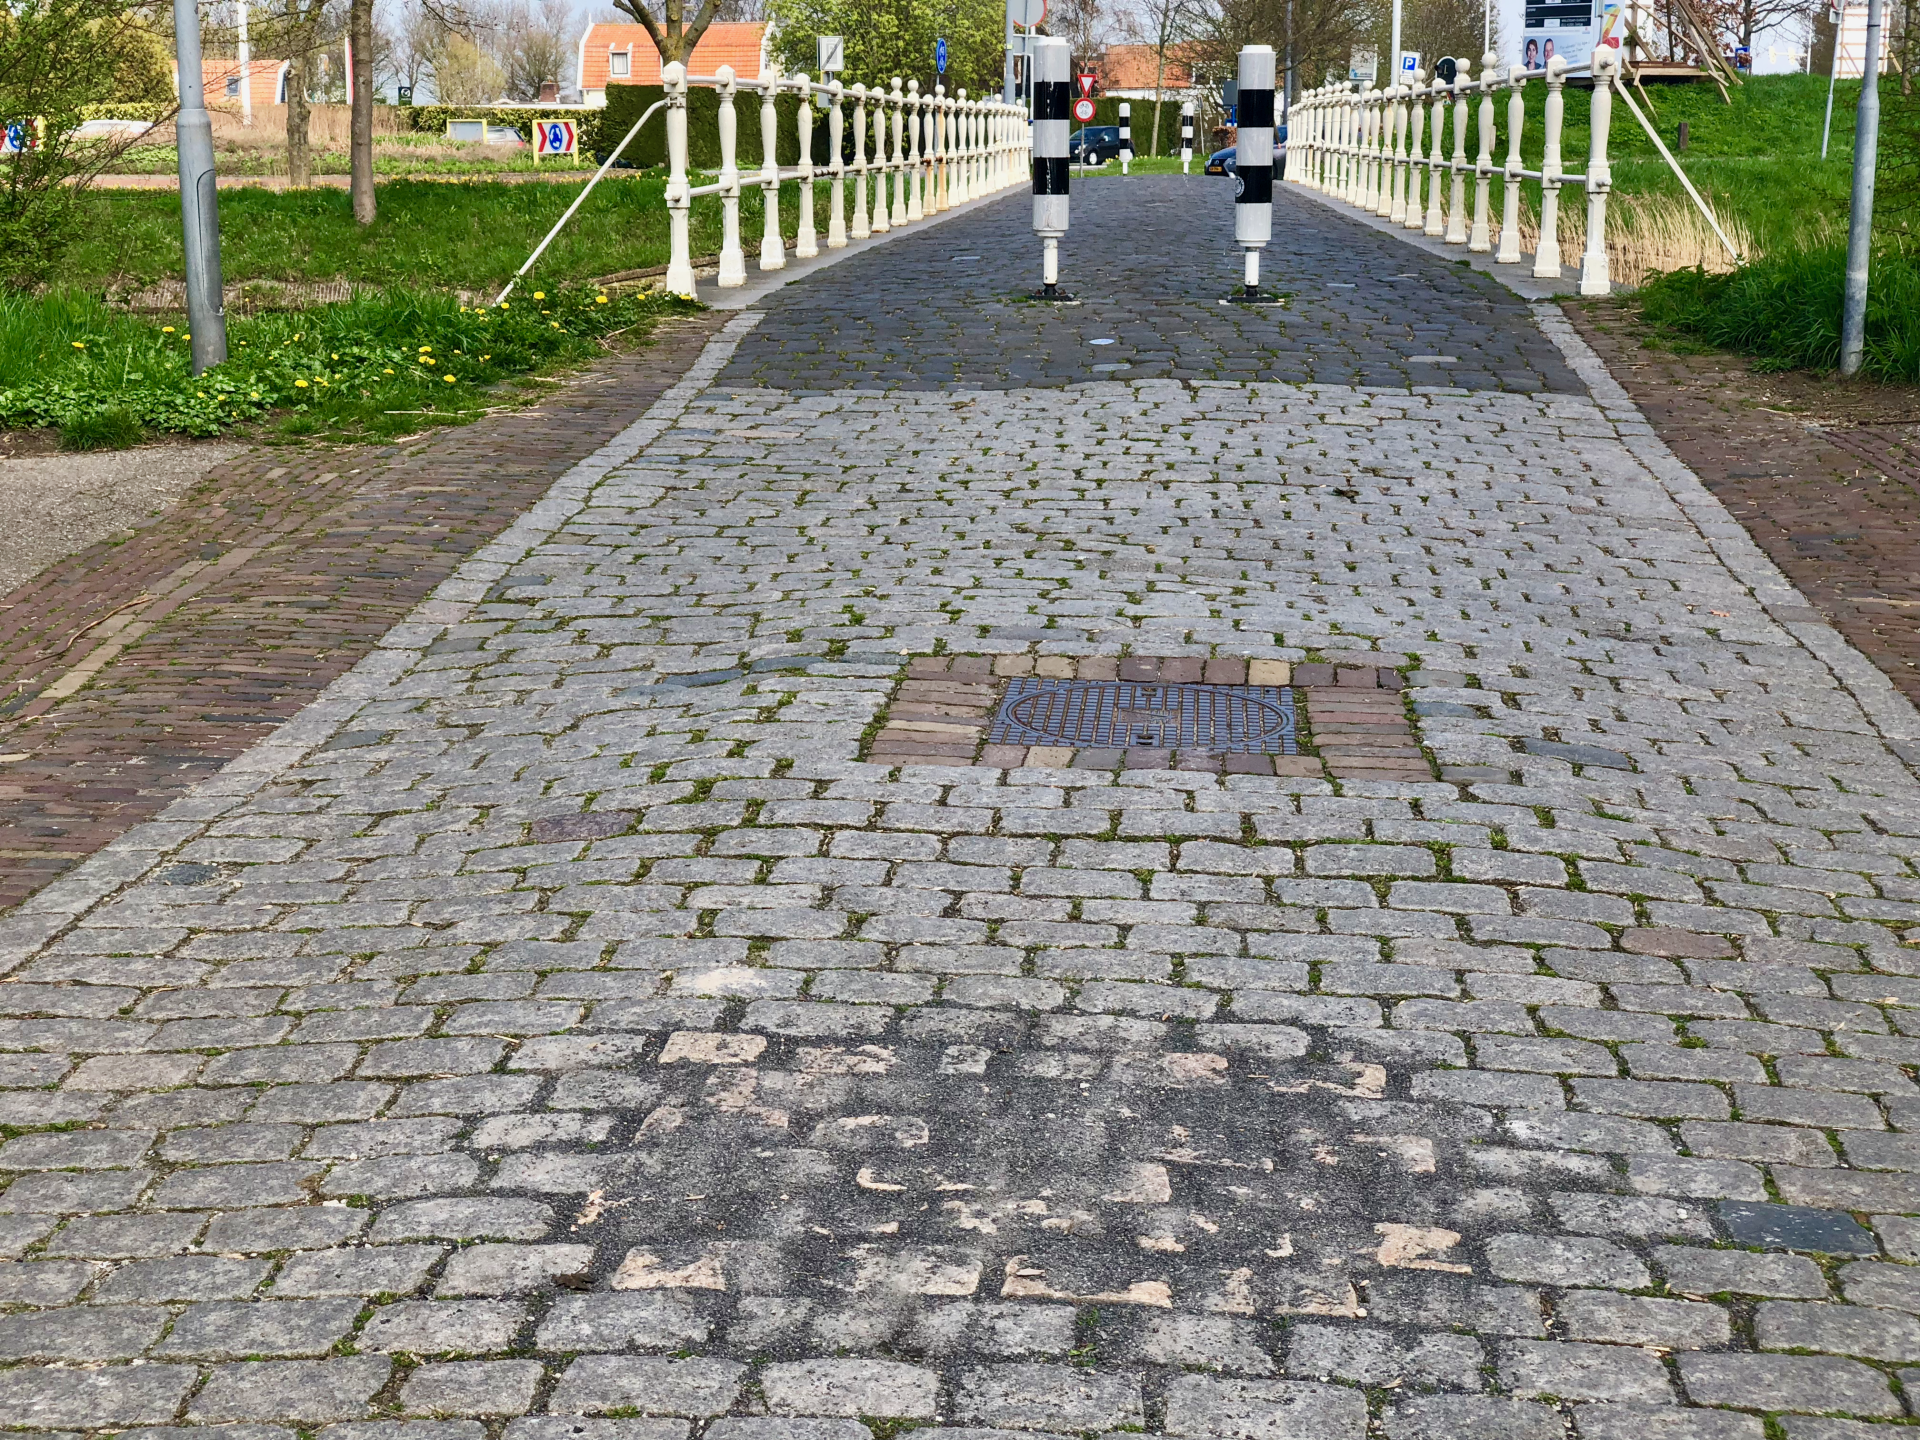 Verwijdering asfalt kompastegel Zuidwellestraat, Stadsjuwelenroute. foto: Zierikzee-Monumentenstad.nl